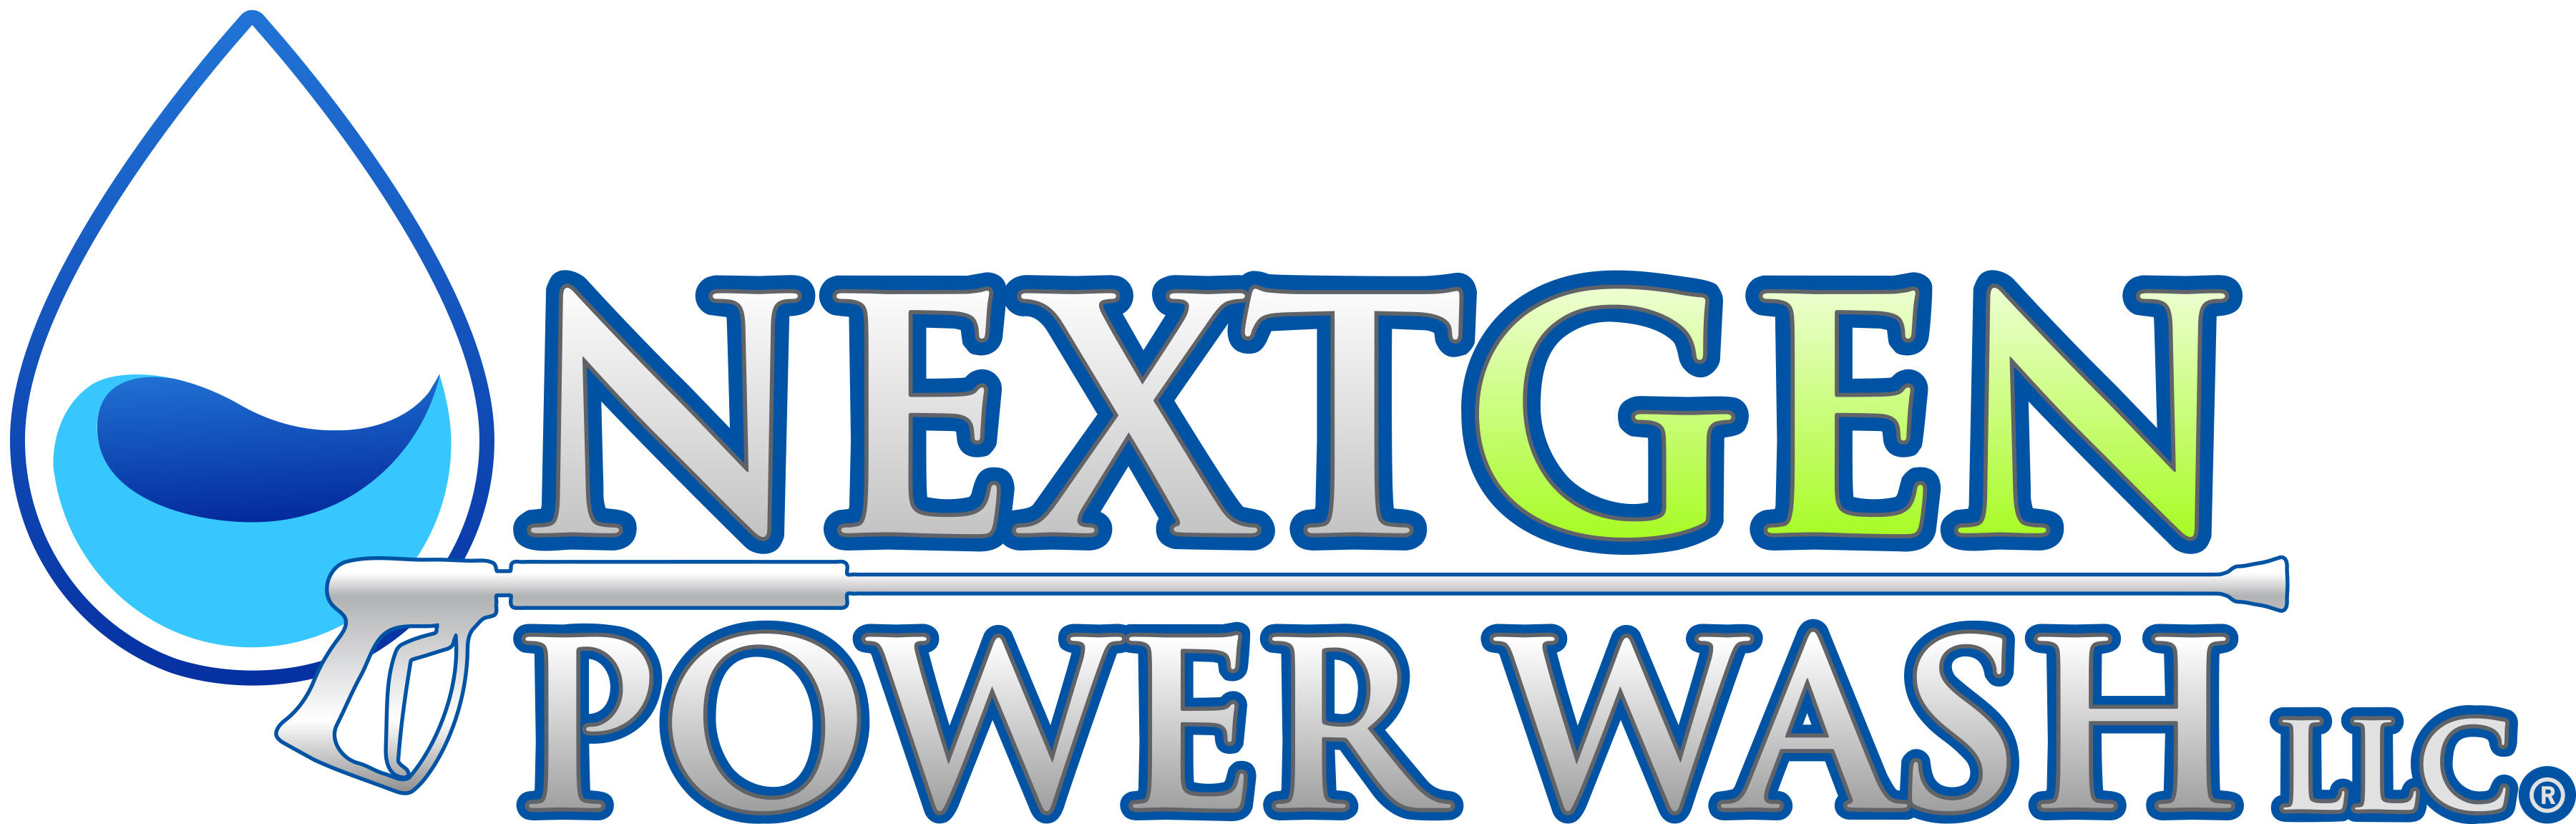 NextGen Power Wash LLC Logo Bloomsburg Pennsylvania